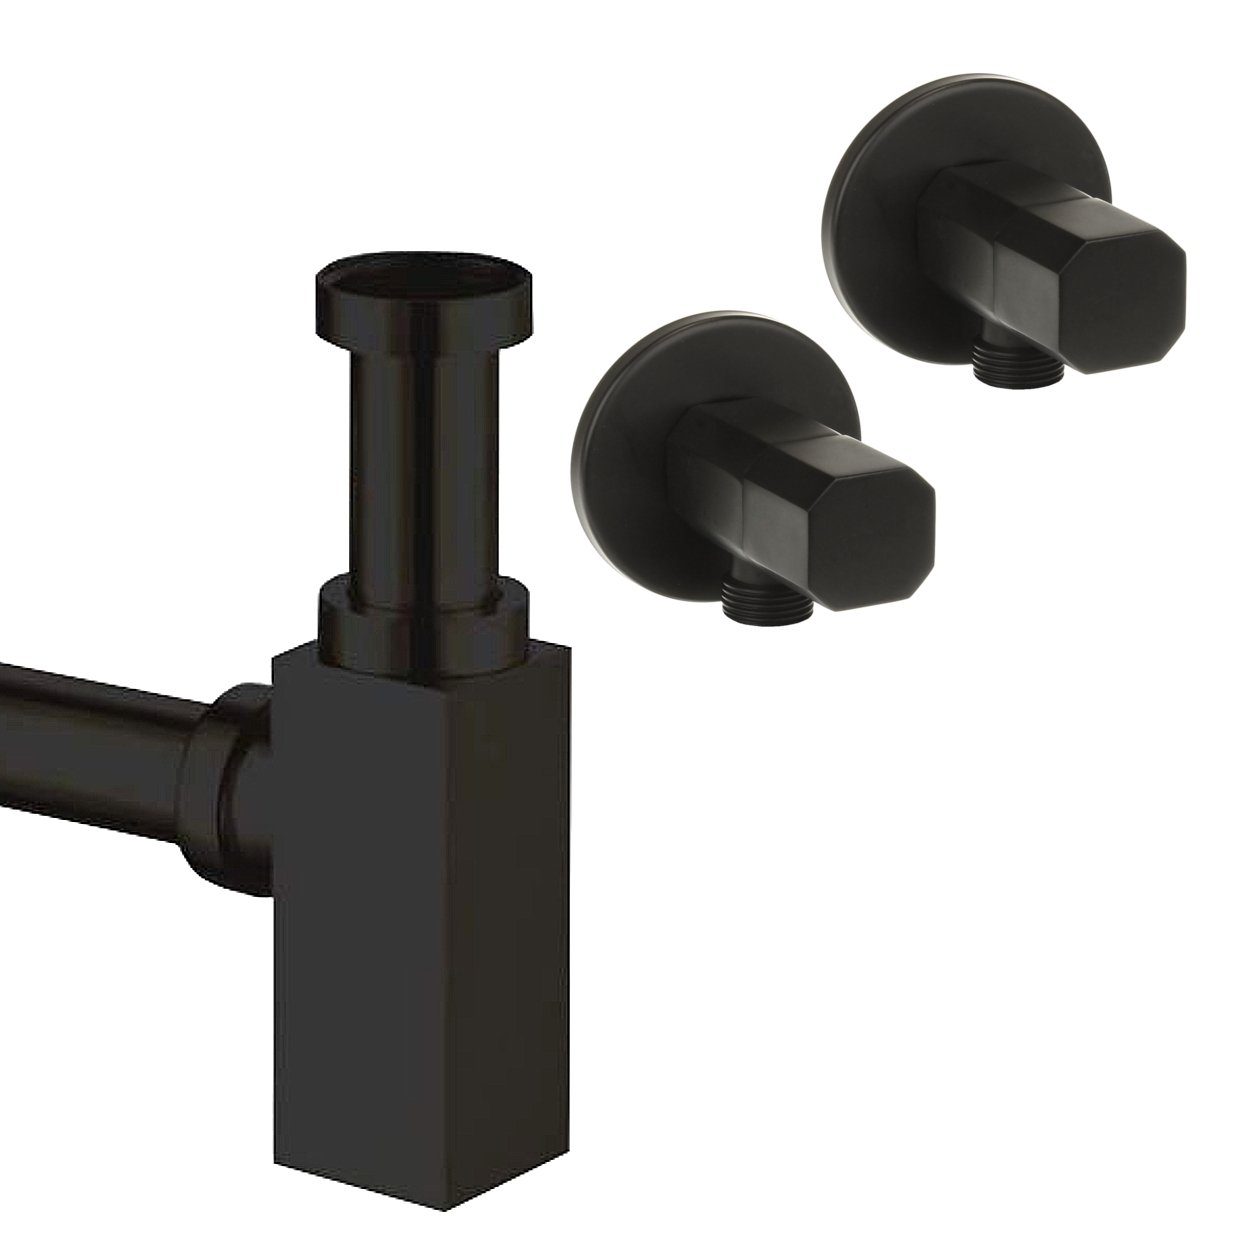 Sanixa Siphon Ablauf für Waschbecken Abfluss Ablaufset Sifon Röhren-syphon, Design Siphon Set eckig schwarz matt mit Eck-Ventilen